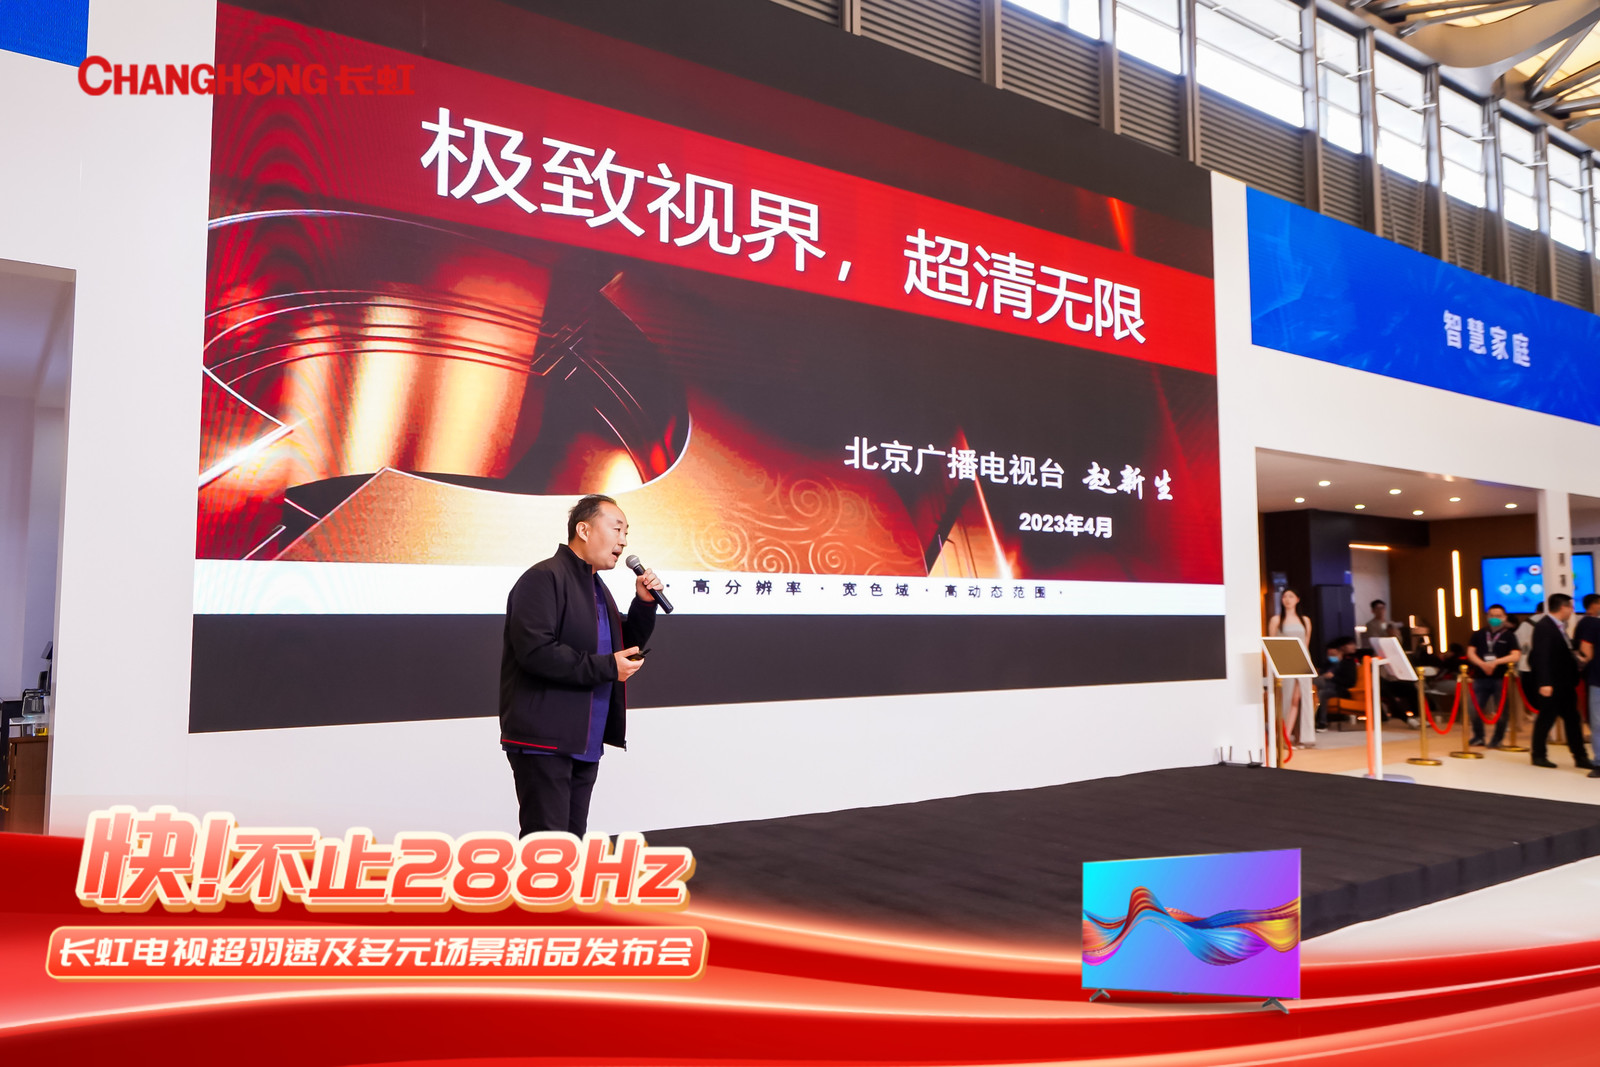 引领中国显像技术革命 长虹288Hz超羽速电视发布